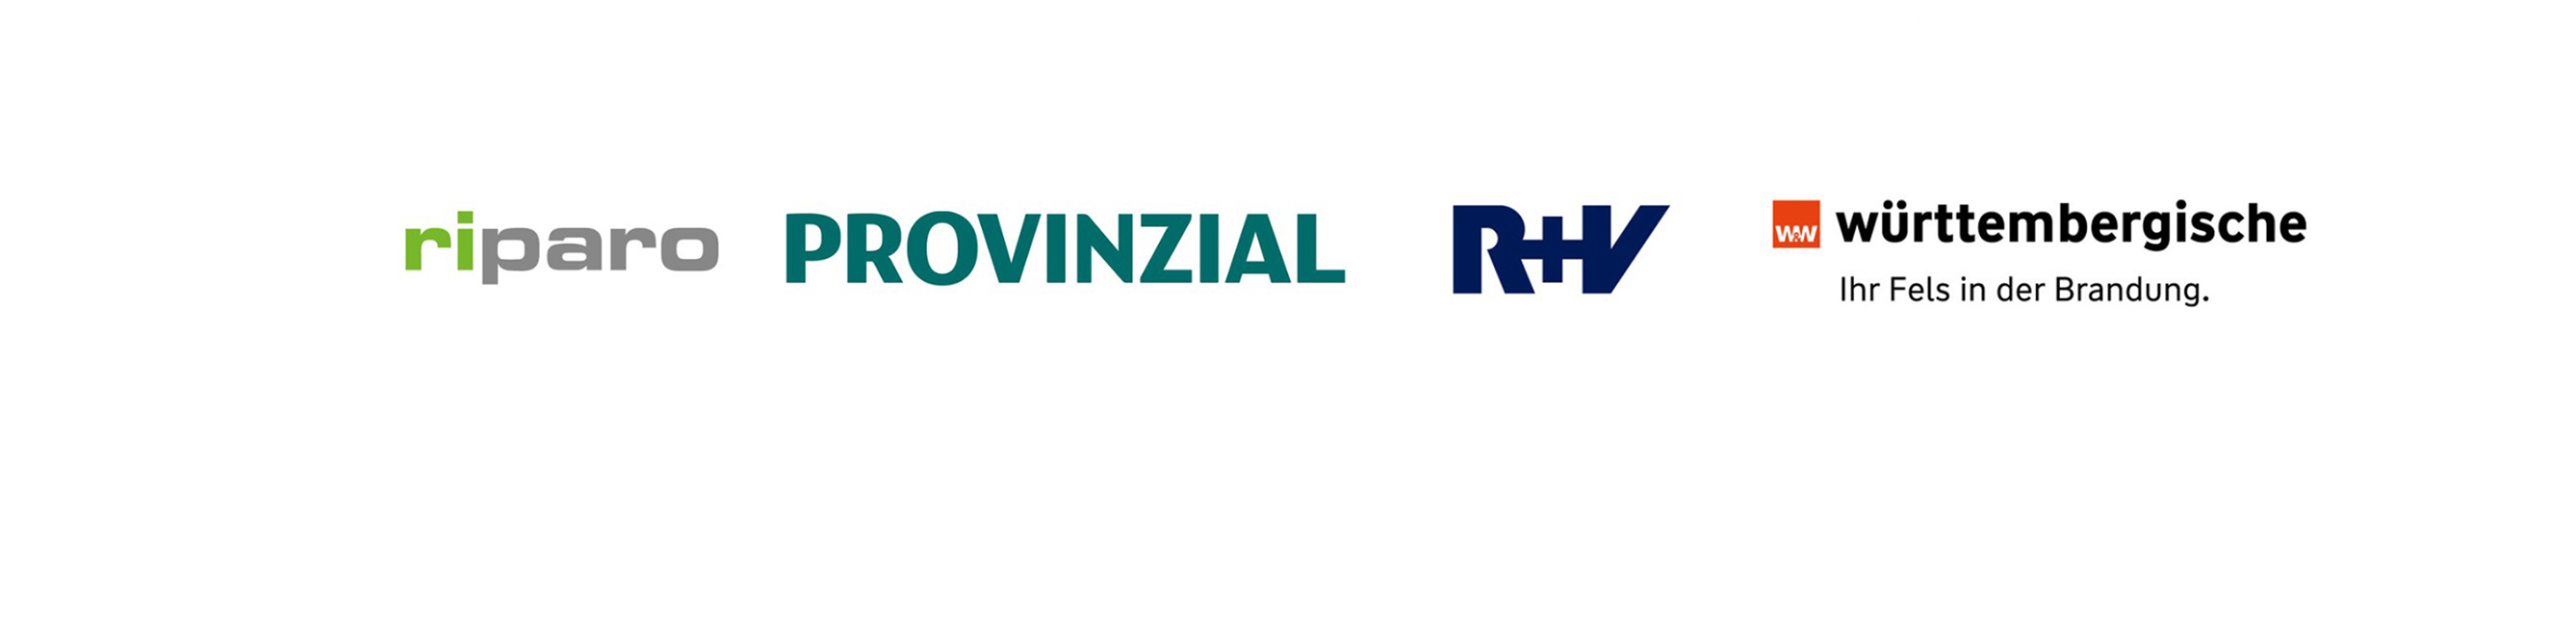 Logos der Provinzial, R+V, Württembergischen und riparo